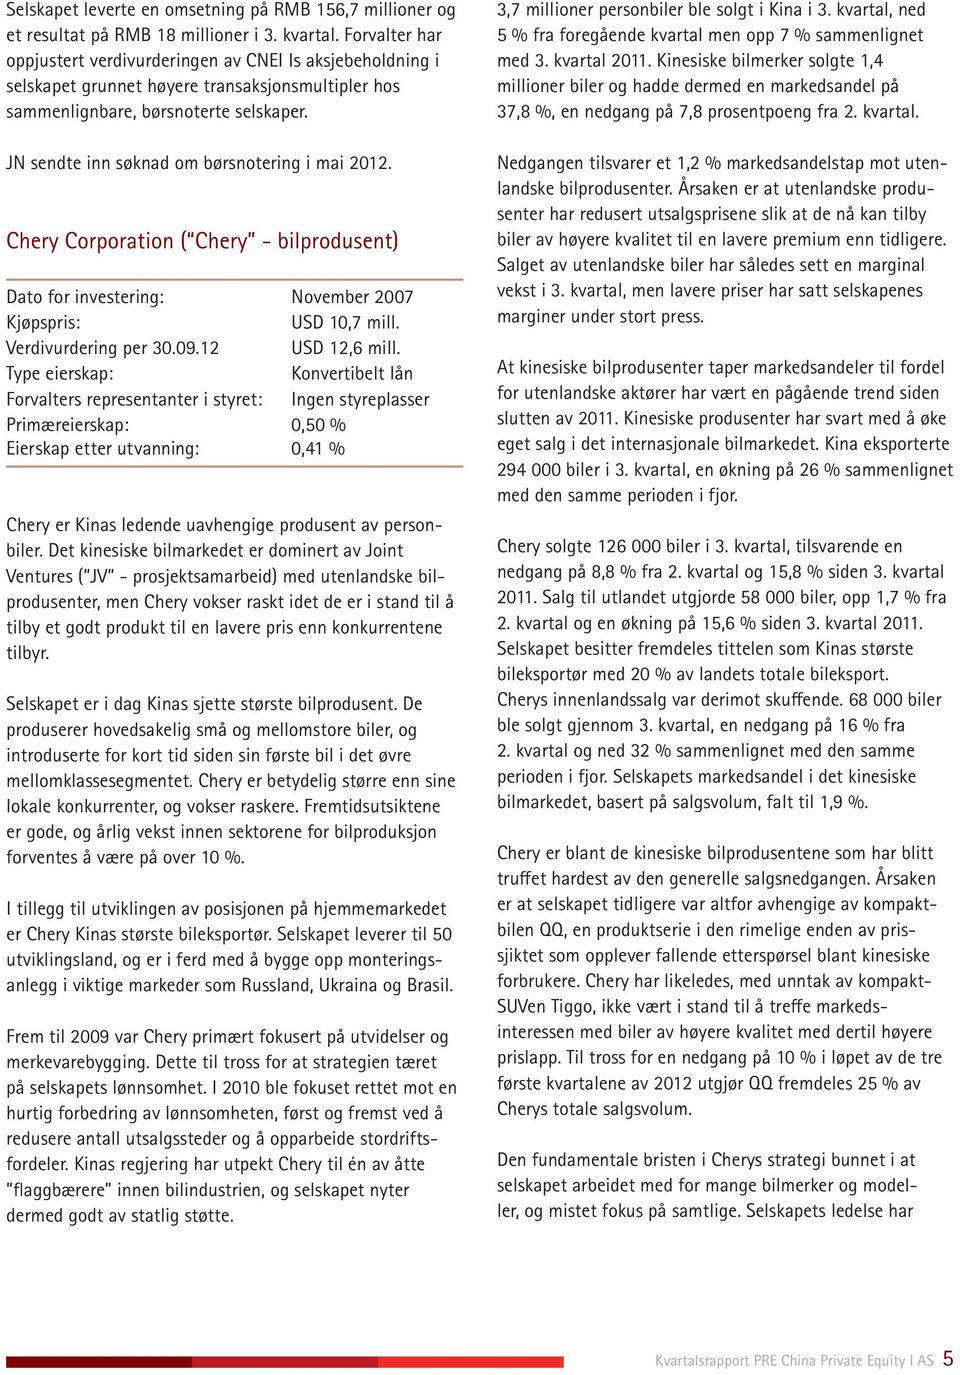 JN sendte inn søknad om børsnotering i mai 2012. Chery Corporation ( Chery - bilprodusent) Dato for investering: November 2007 USD 10,7 mill. Verdivurdering per 30.09.12 USD 12,6 mill.